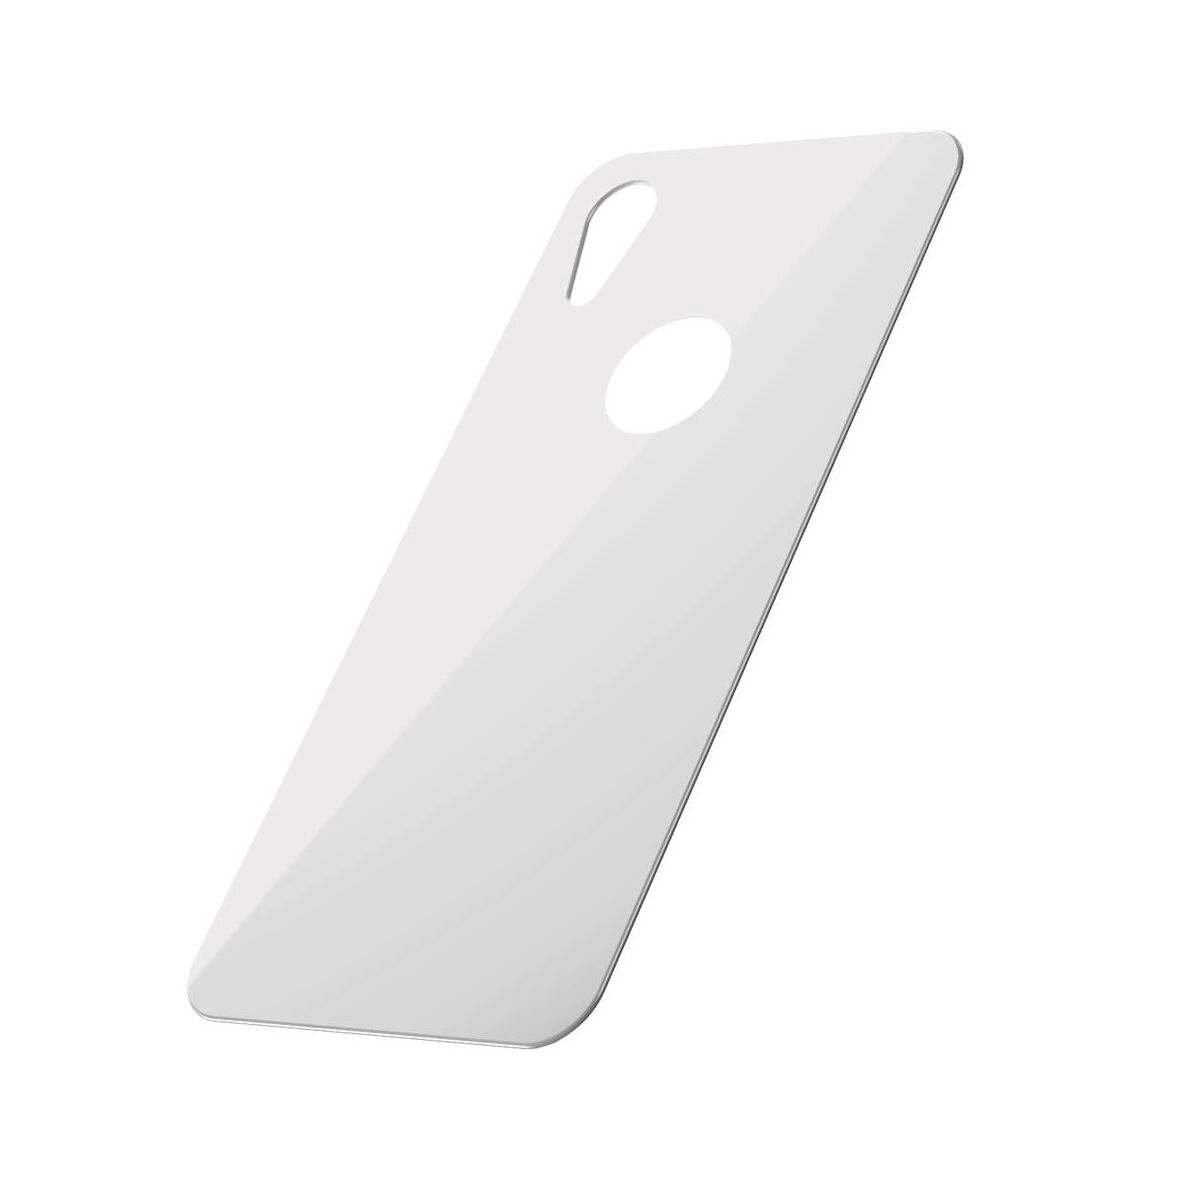 Kép 3/9 - Baseus iPhone XR/ 11 (6.1") 0.3 mm, teljes felületre edzett üveg hátlap védő fólia, fehér (SGAPIPH61-BM02)